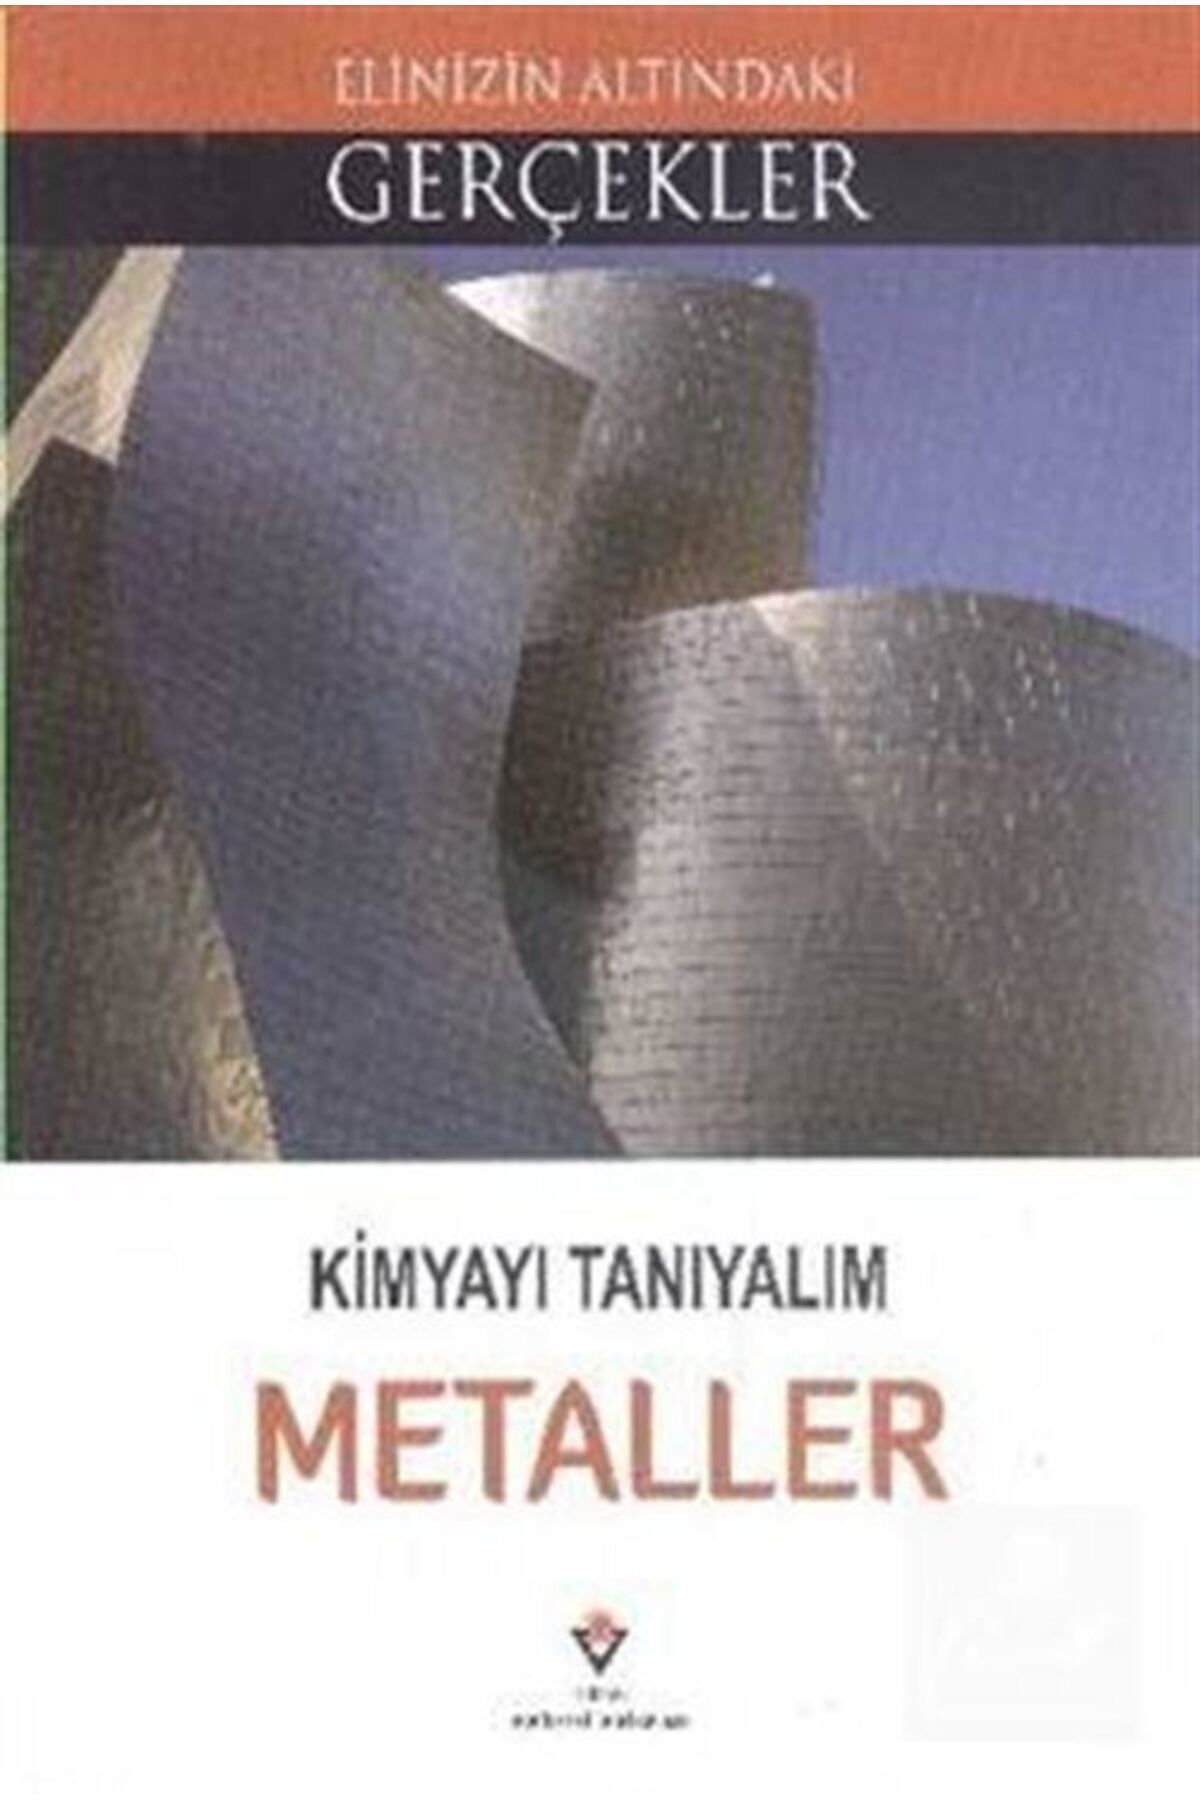 Tübitak Yayınları Kimyayı Tanıyalım - Metaller / Elinizin Altındaki Gerçekler